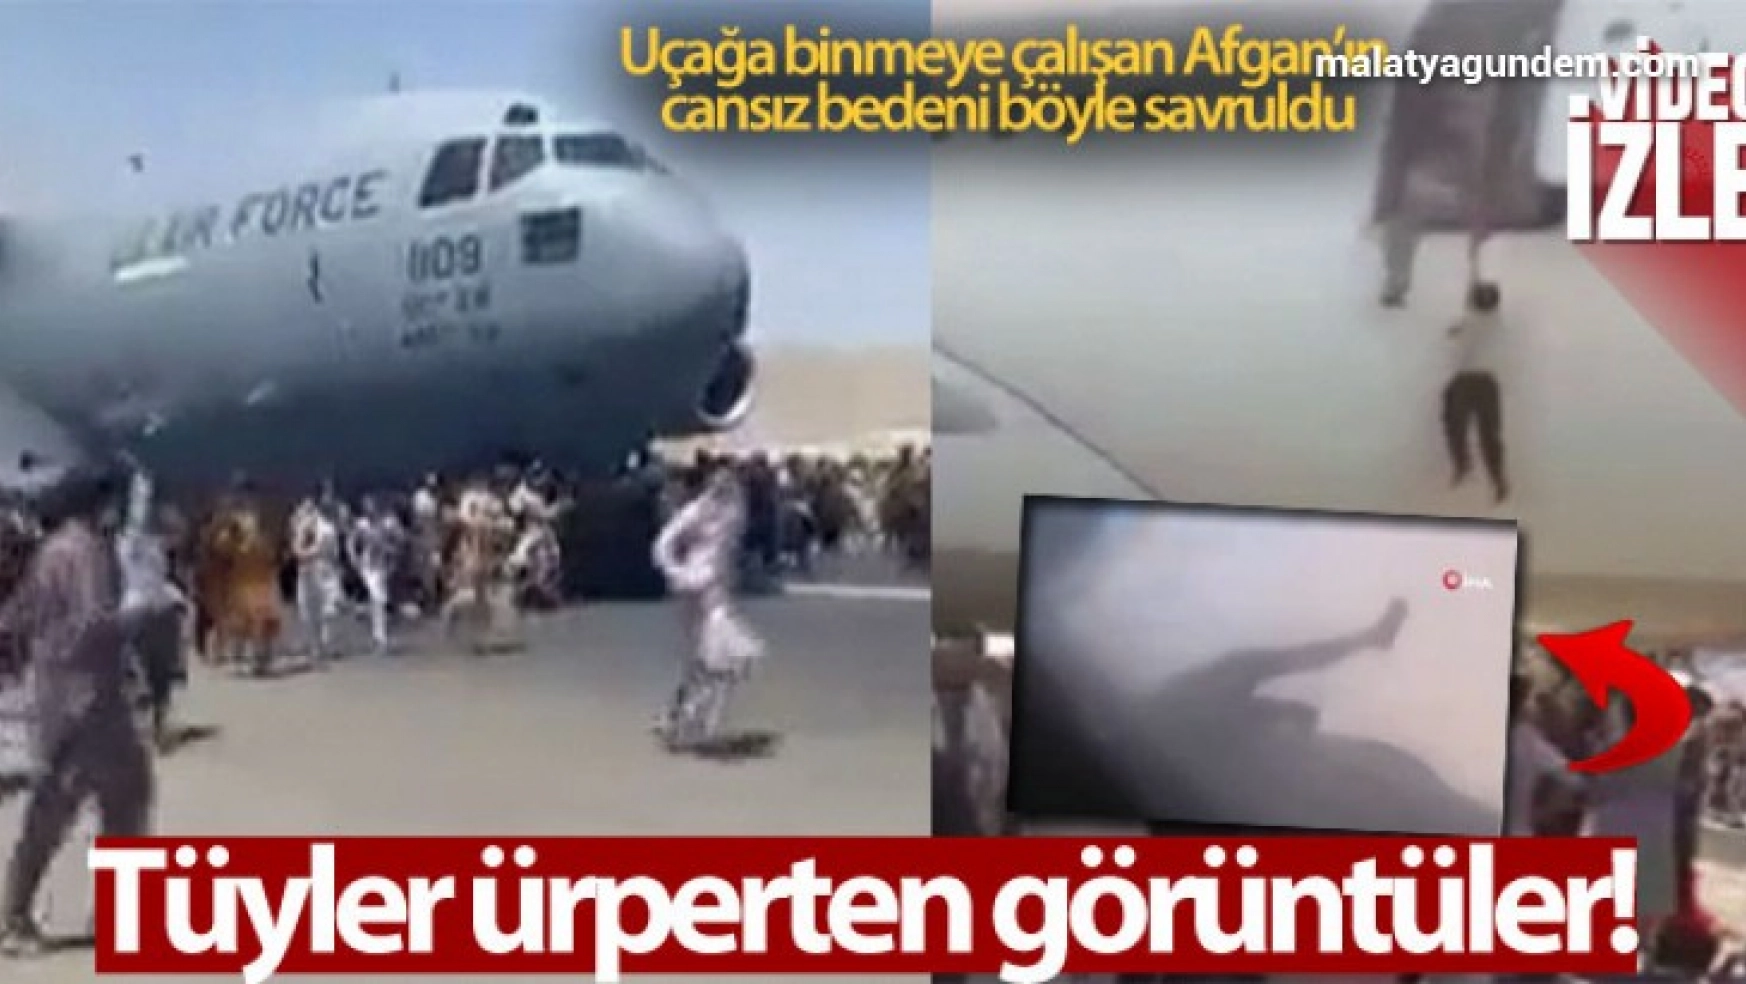 Uçağın kanadına tutunarak kaçmaya çalışan Afgan'ın cansız bedeni görüntülendi